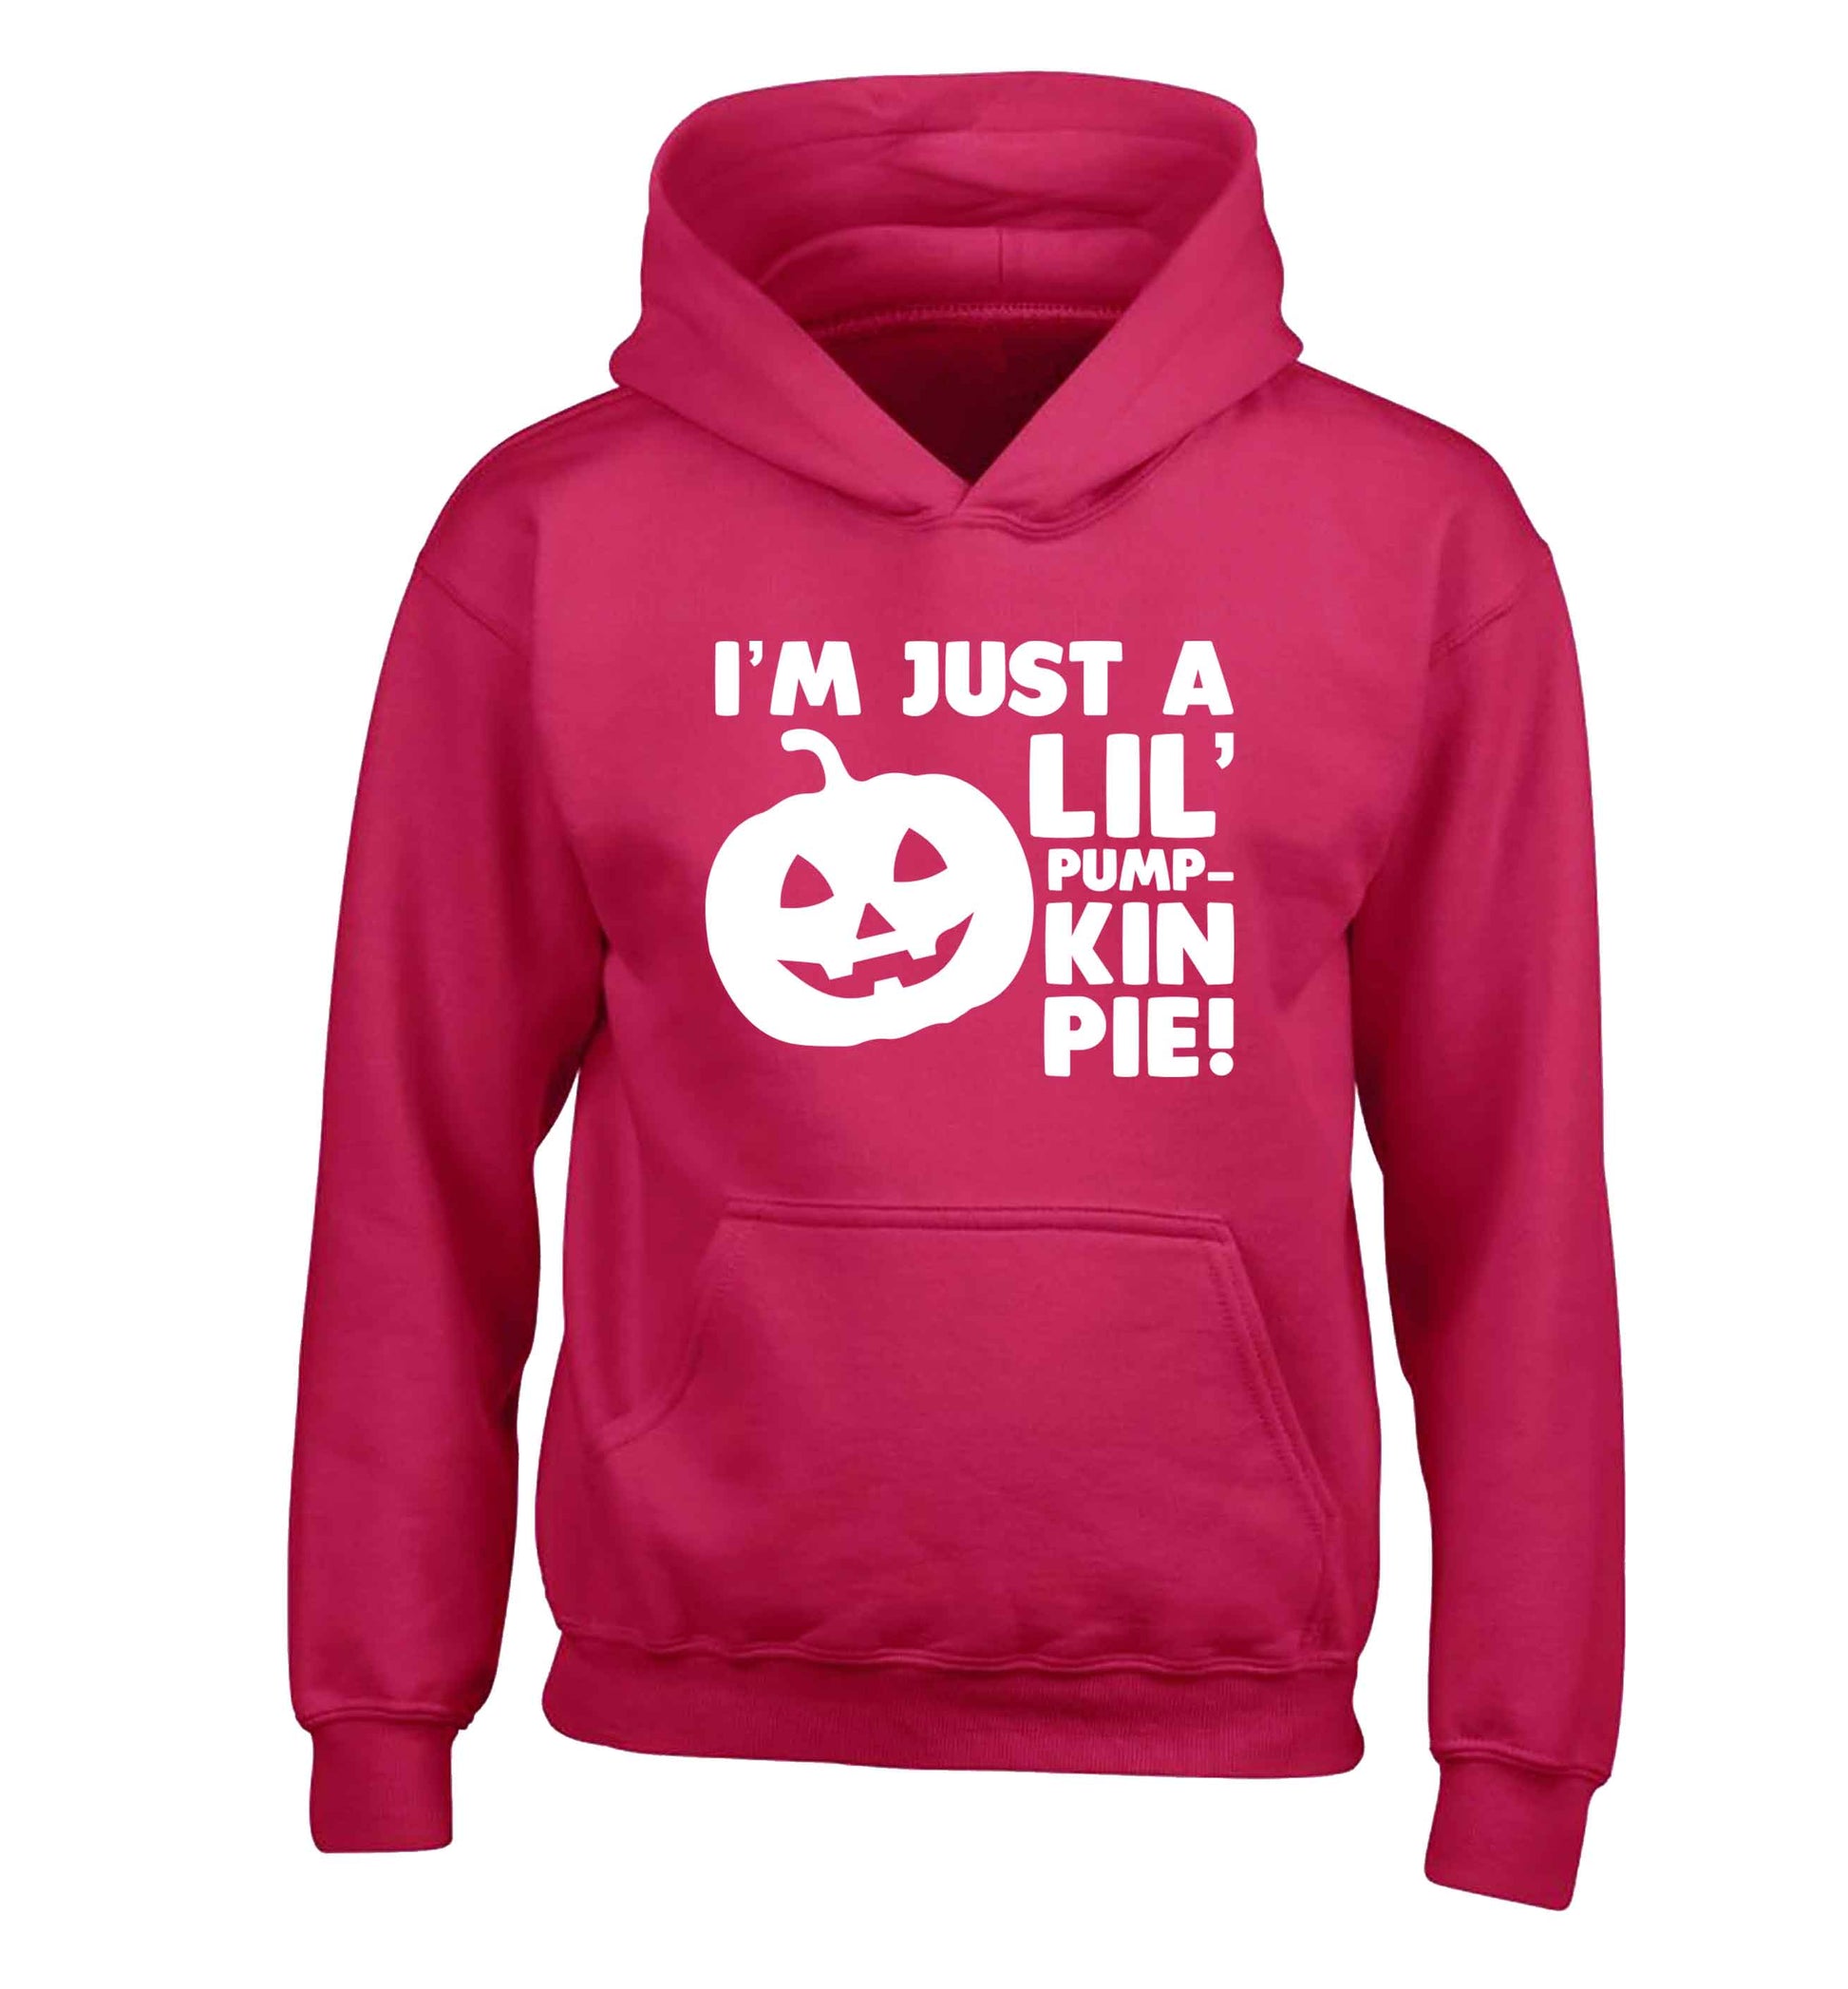 I'm just a lil' pumpkin pie children's pink hoodie 12-13 Years